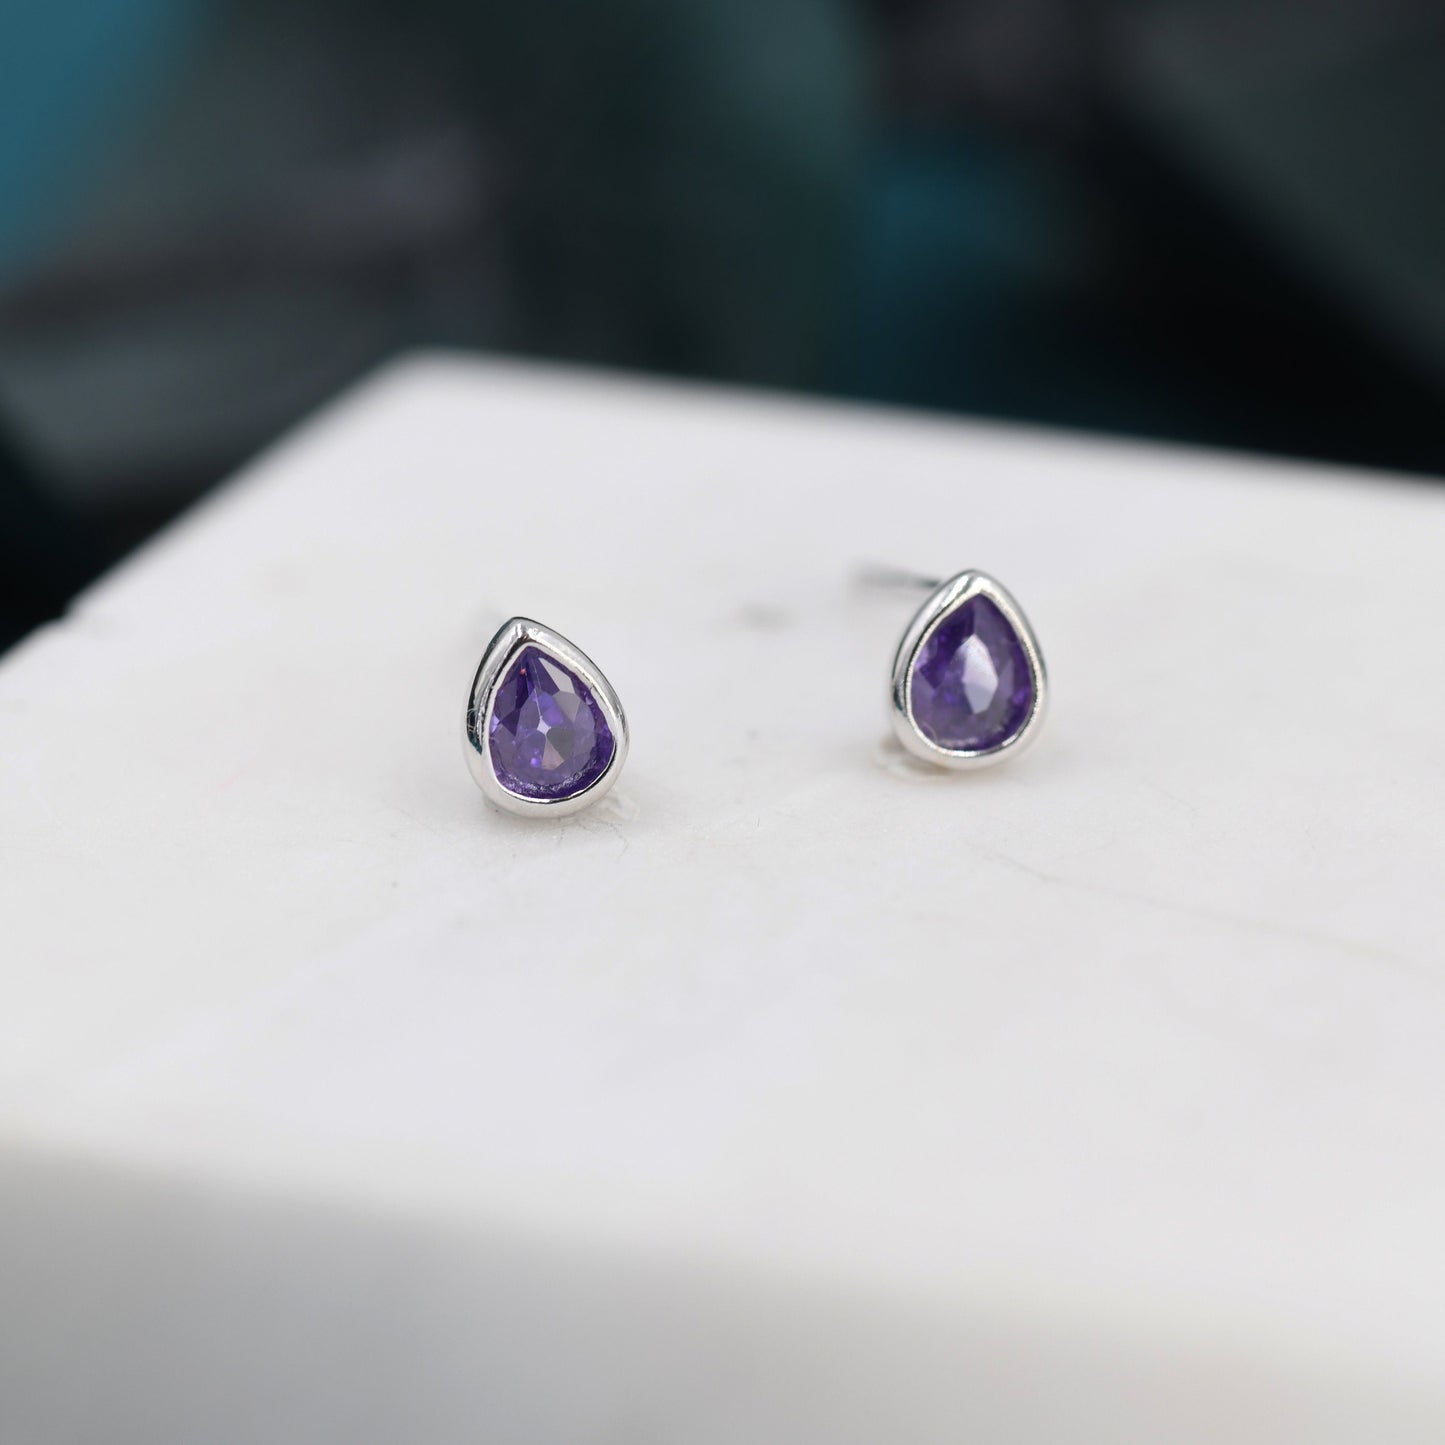 Extra Tiny Amethyst Purple Droplet CZ Stud Earrings in Sterling Silver, Tiny Pear Cut Bezel CZ Stud Earrings, February Birthstone